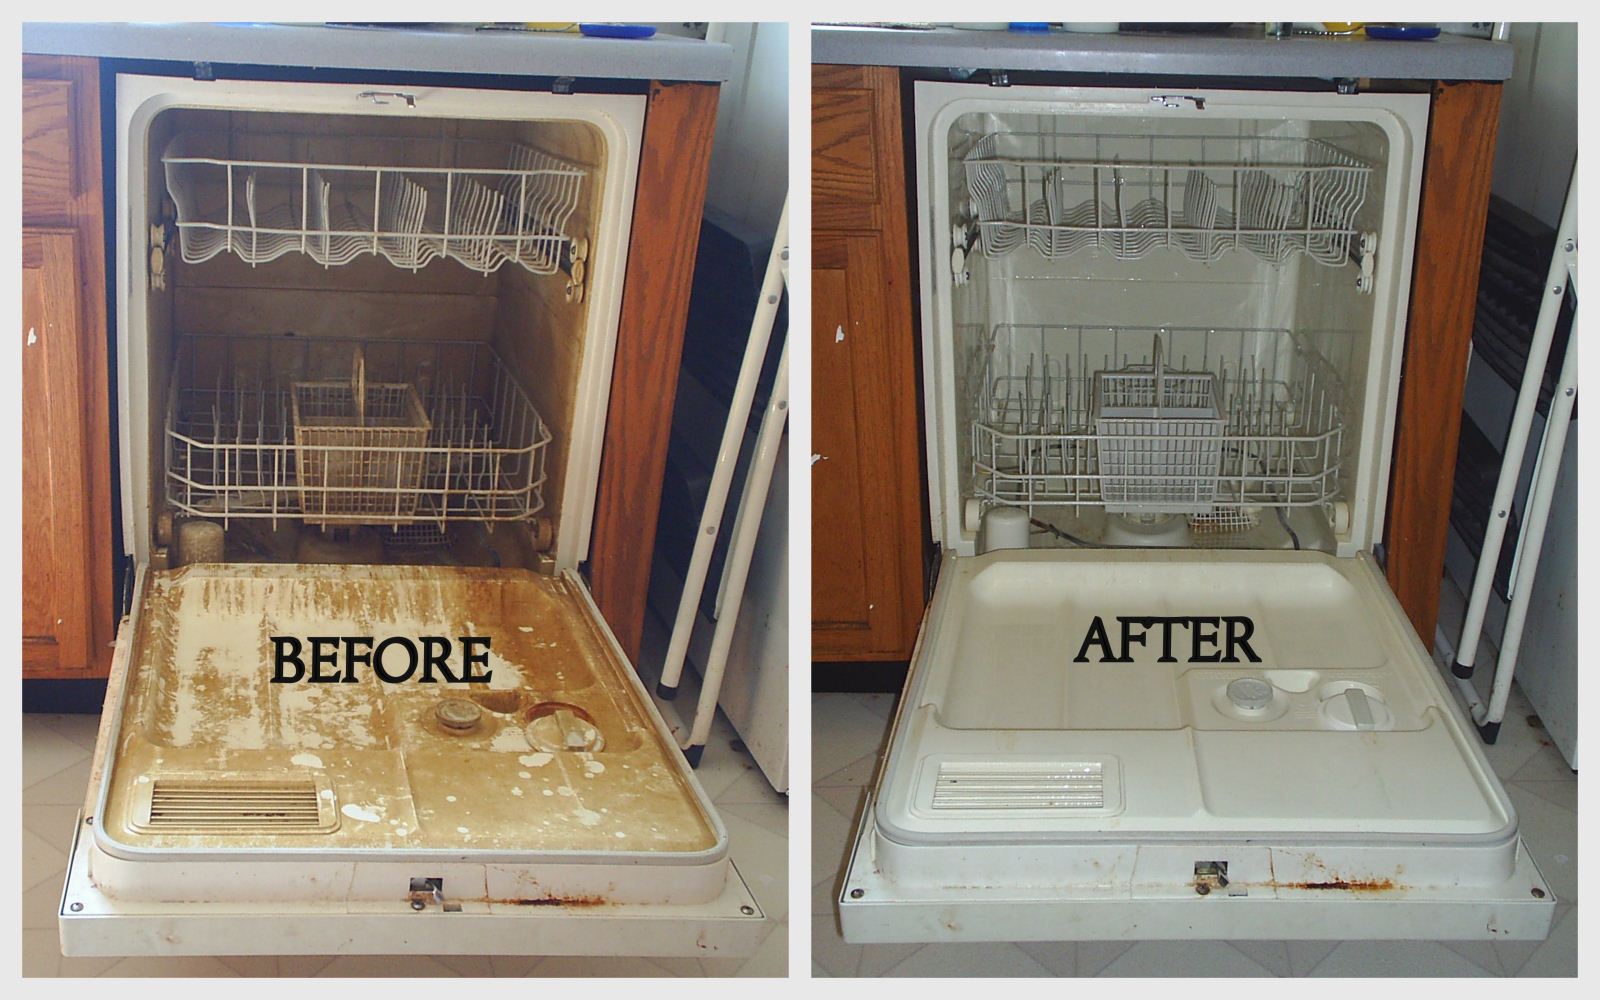 Cách vệ sinh máy rửa bát sạch và hiệu quả nhất.